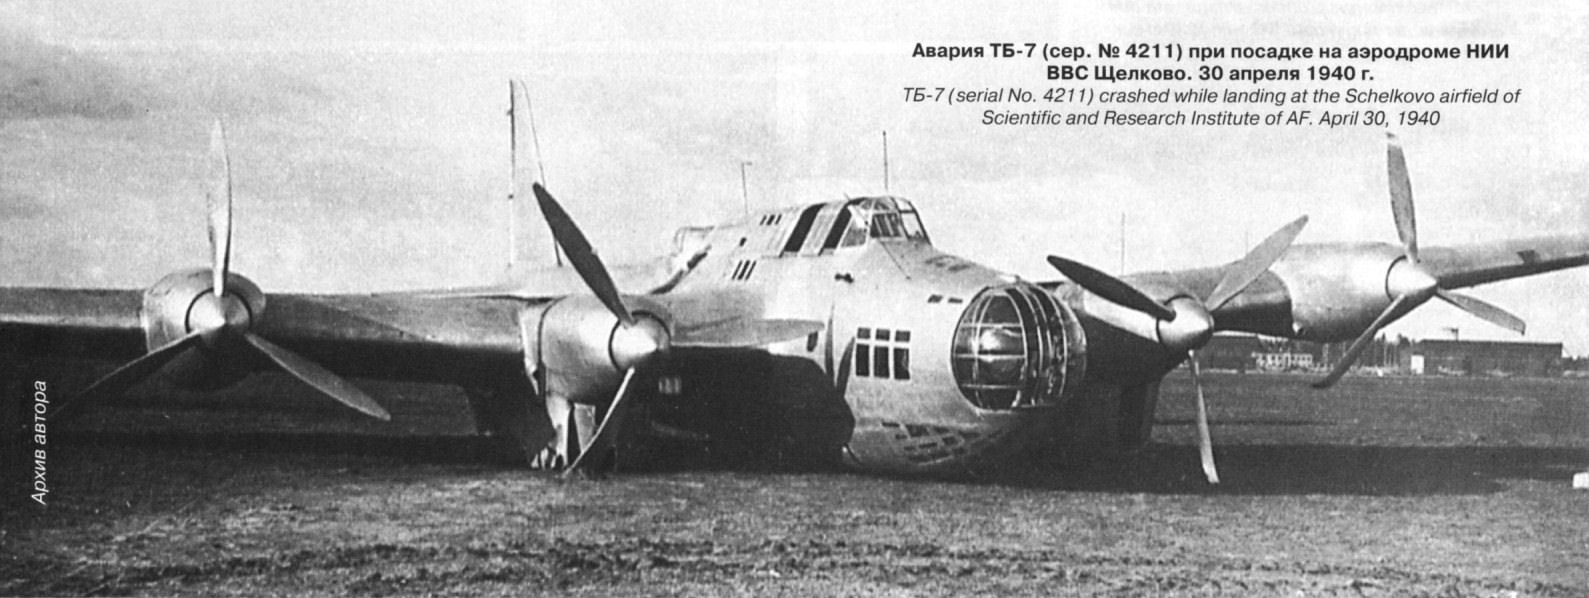 ТБ-7 И ер-2